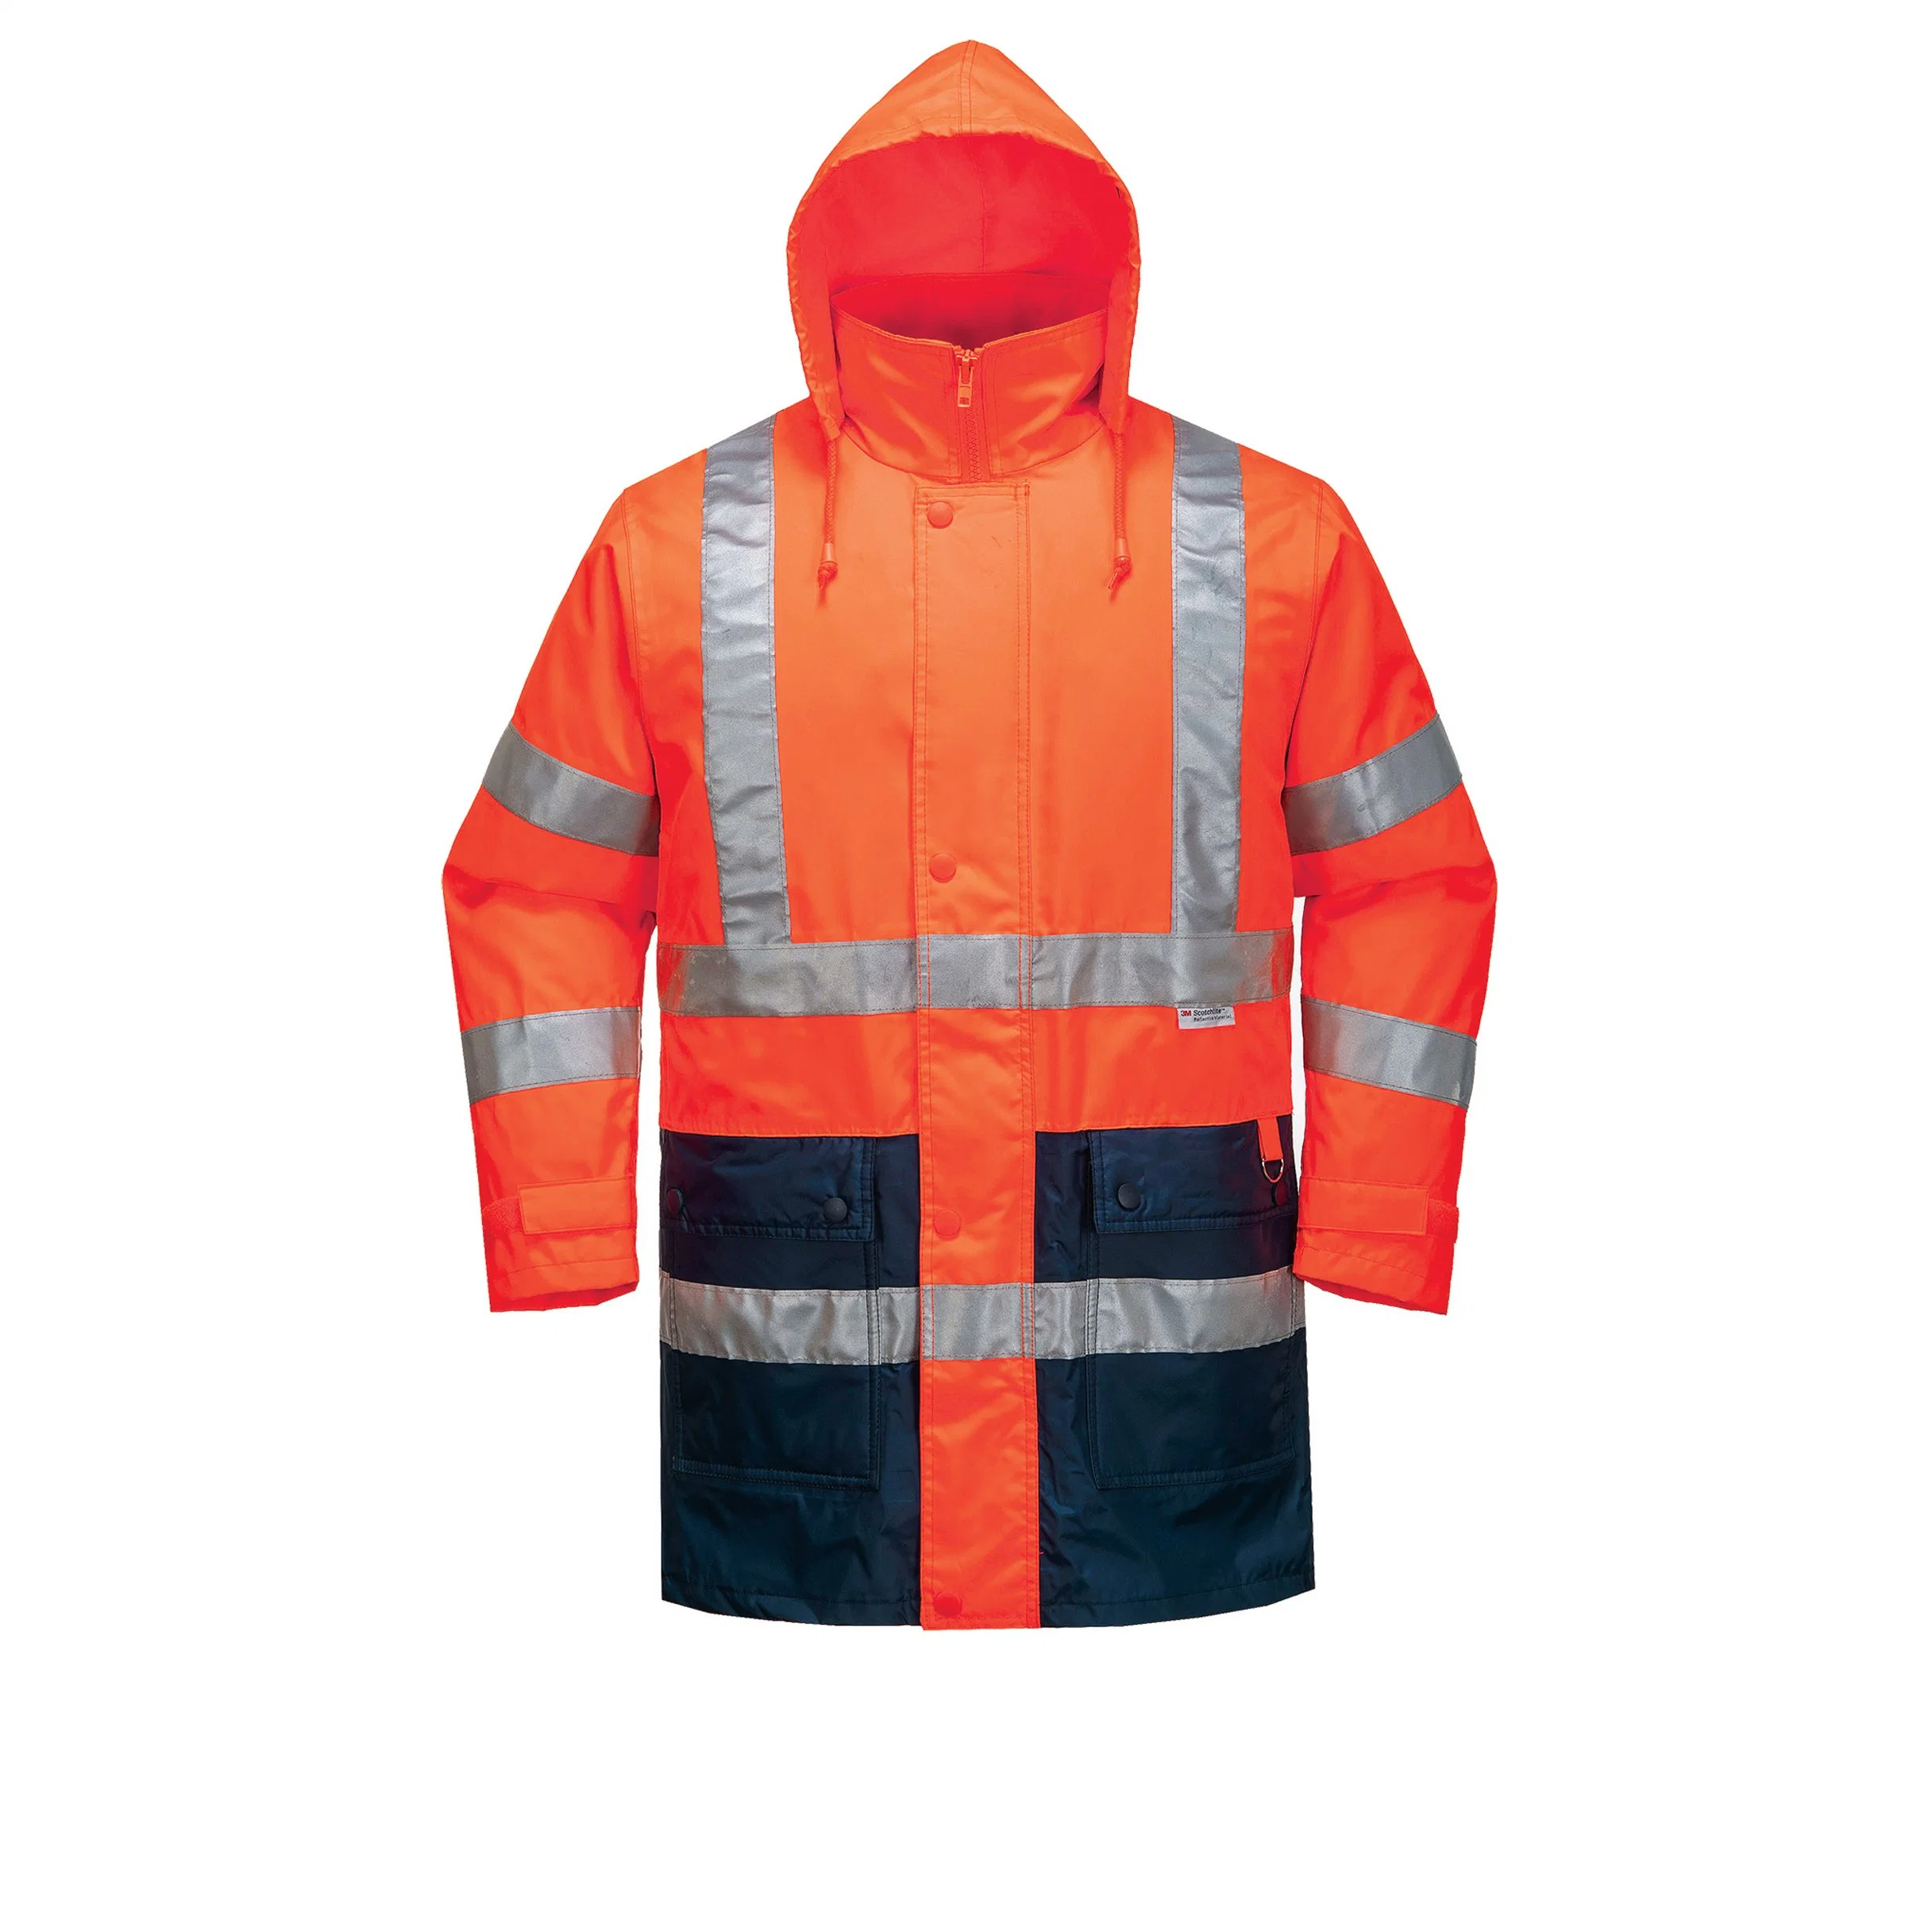 Куртка и брюки с улучшенным обзором, безопасная рабочая одежда